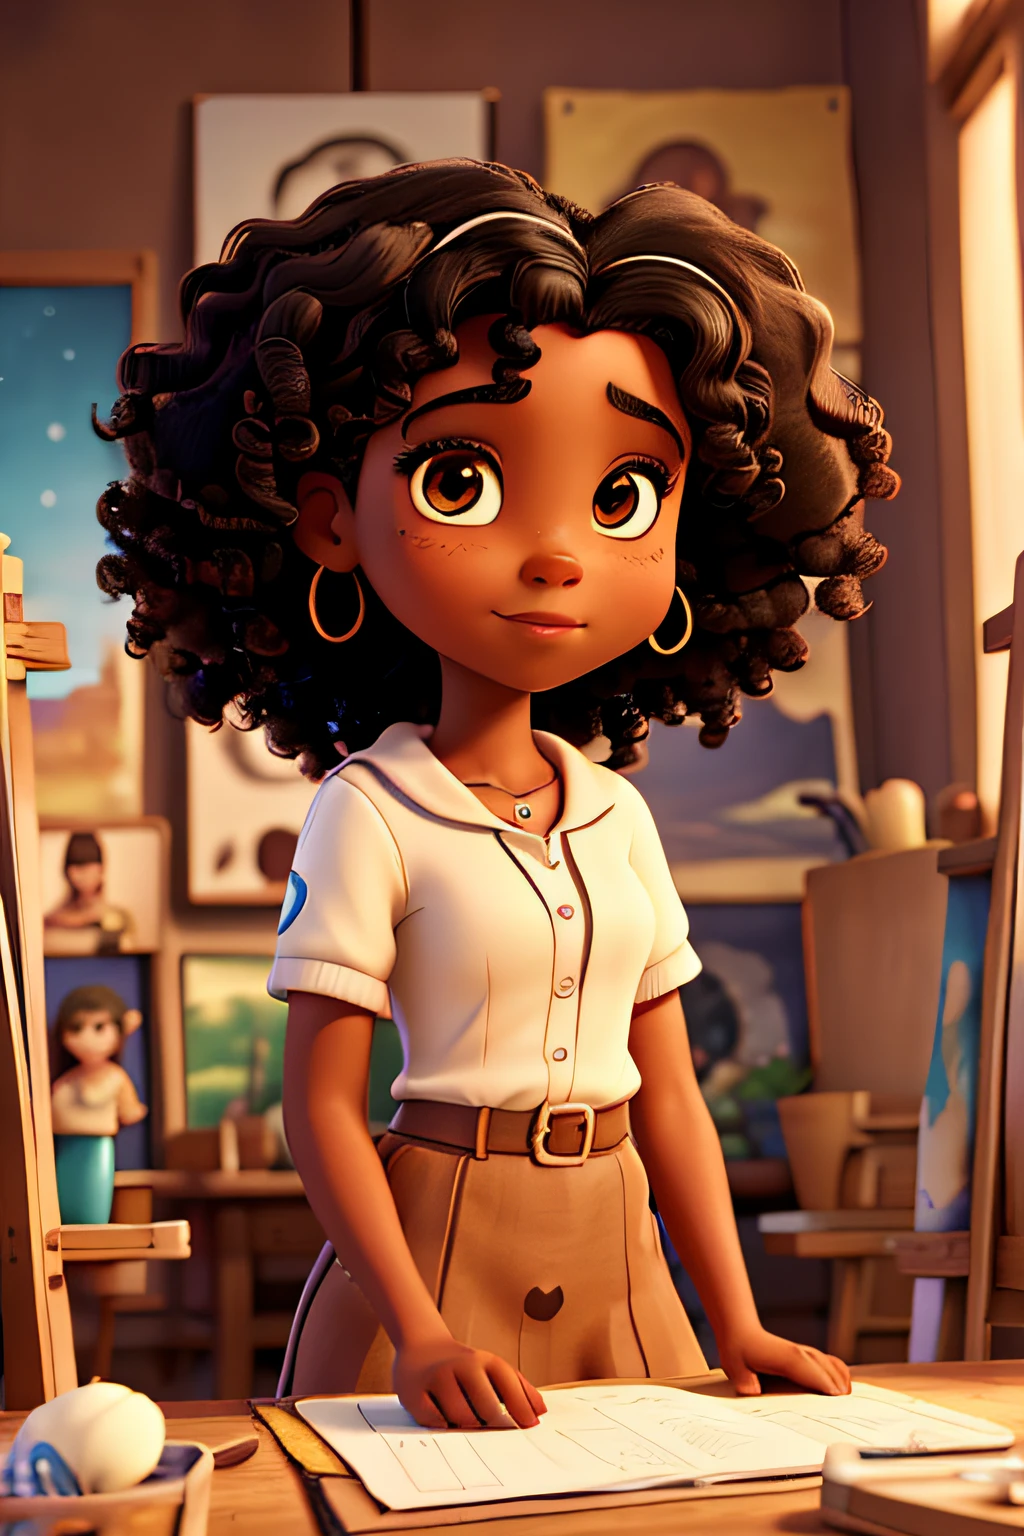 Capa de filme estilo Disney, uma garota negra com olhos castanhos, pele escura e cabelos cacheados que trabalha pintando quadros e um estúdio de arte ao fundo